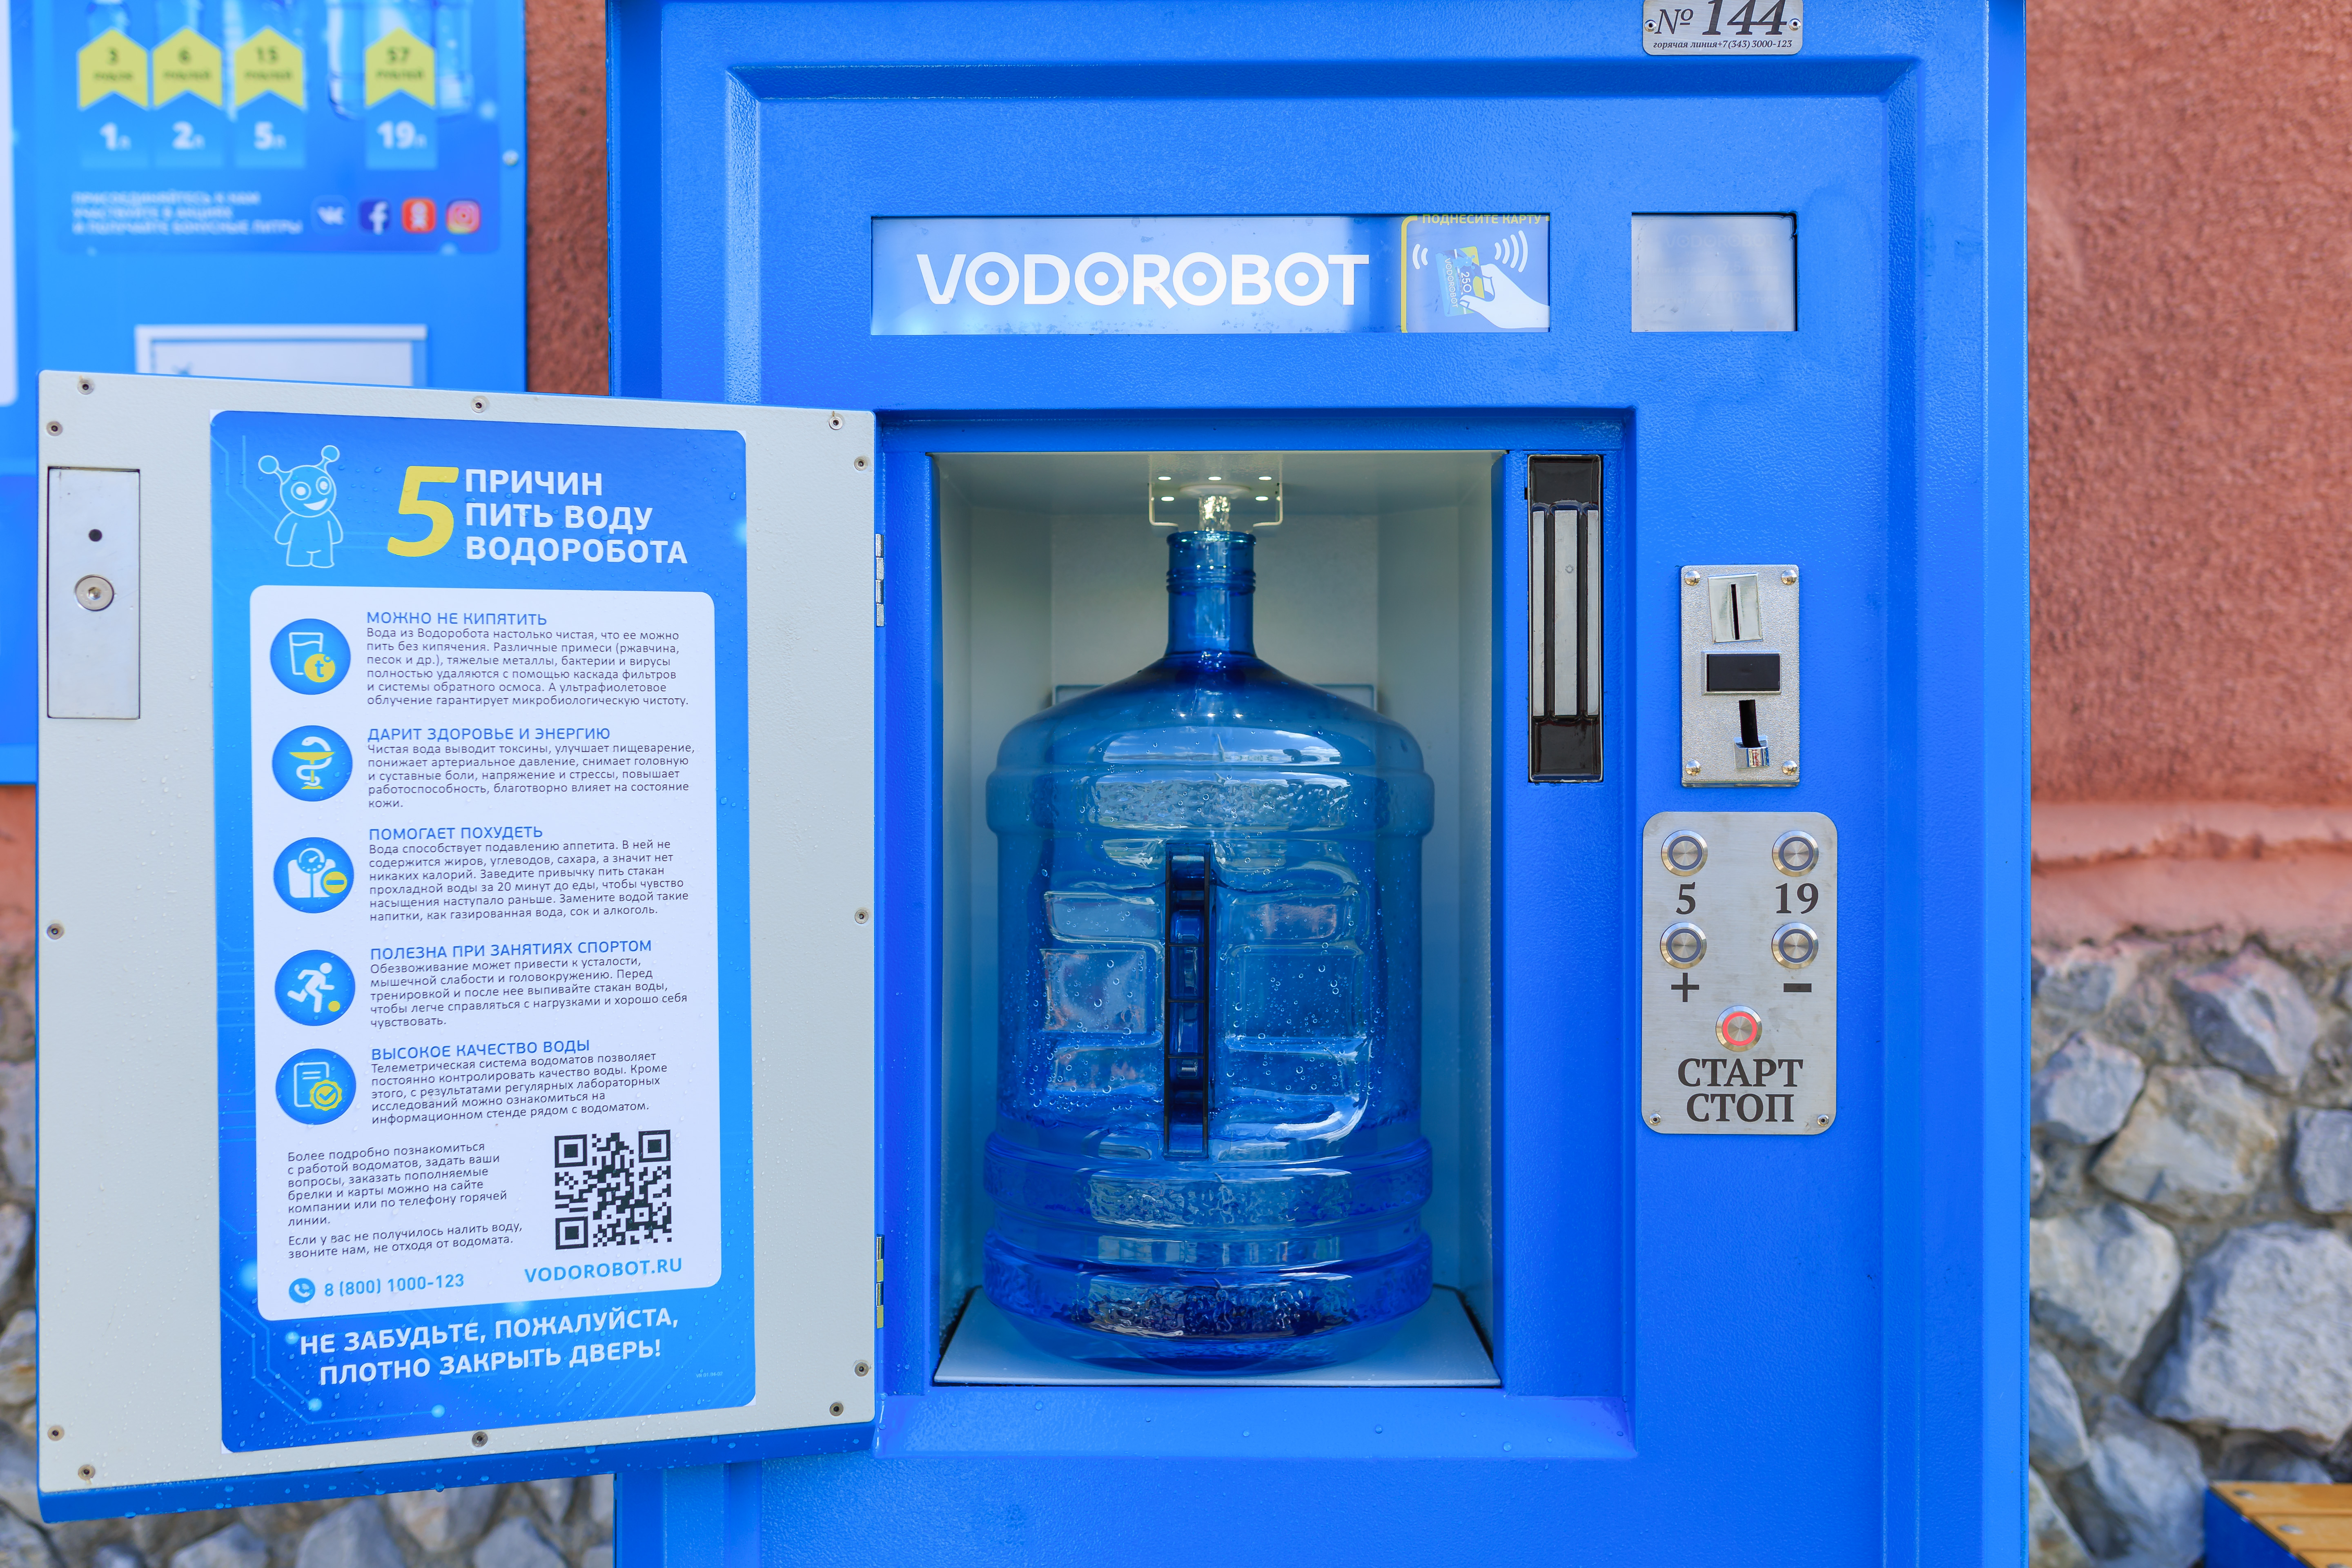 Питьевая вода в учреждениях. Автомат питьевой воды. Автомат с бутилированной водой. Водоробот автомат. Аппарат для питьевой воды на улице.